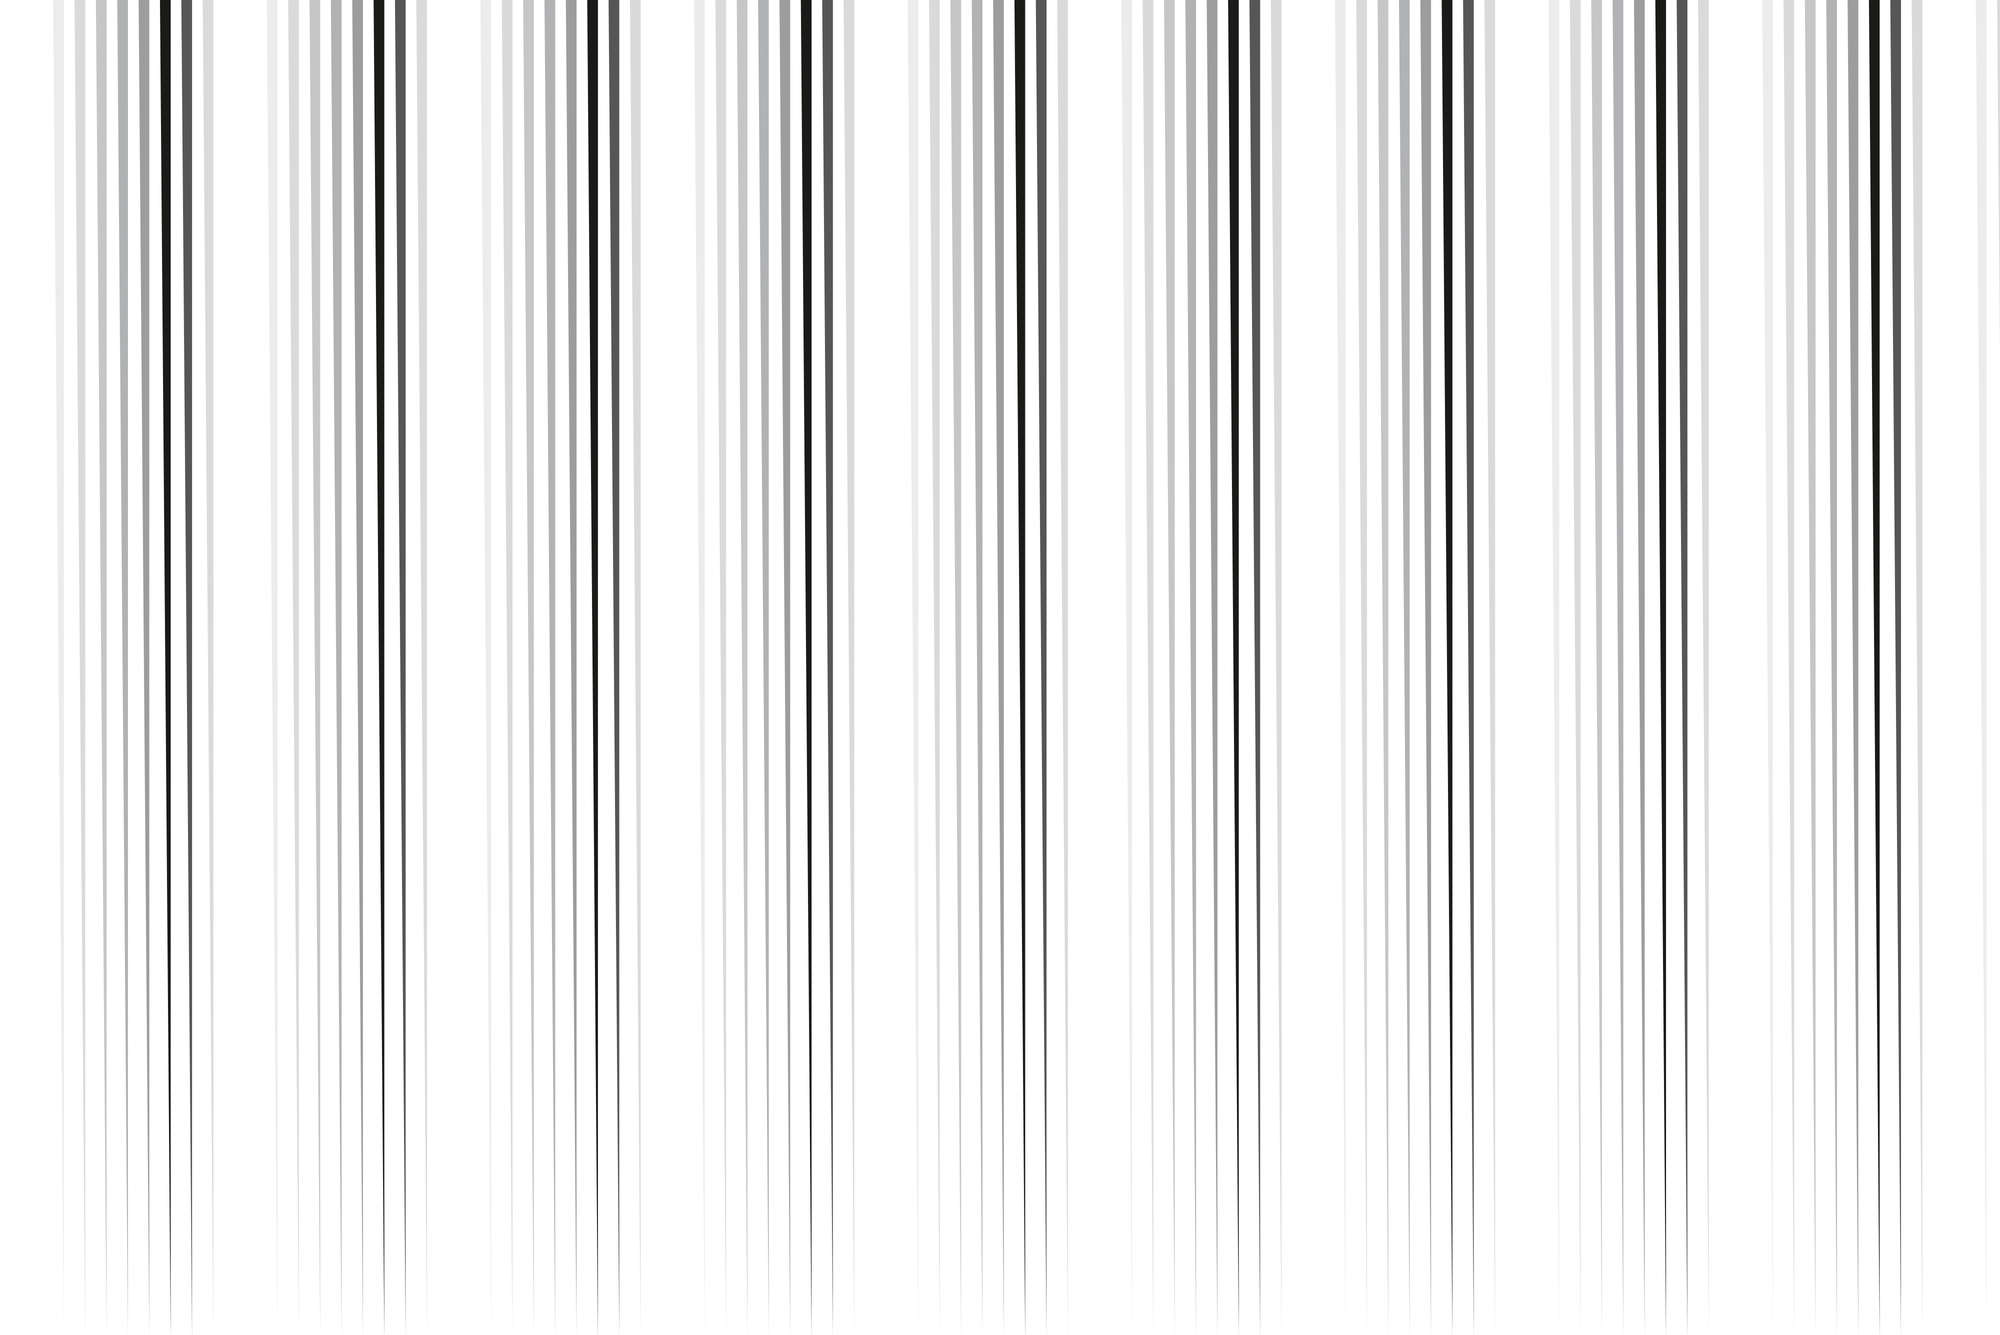             Design Fototapete dünner werdende Streifen weiß grau auf Matt Glattvlies
        